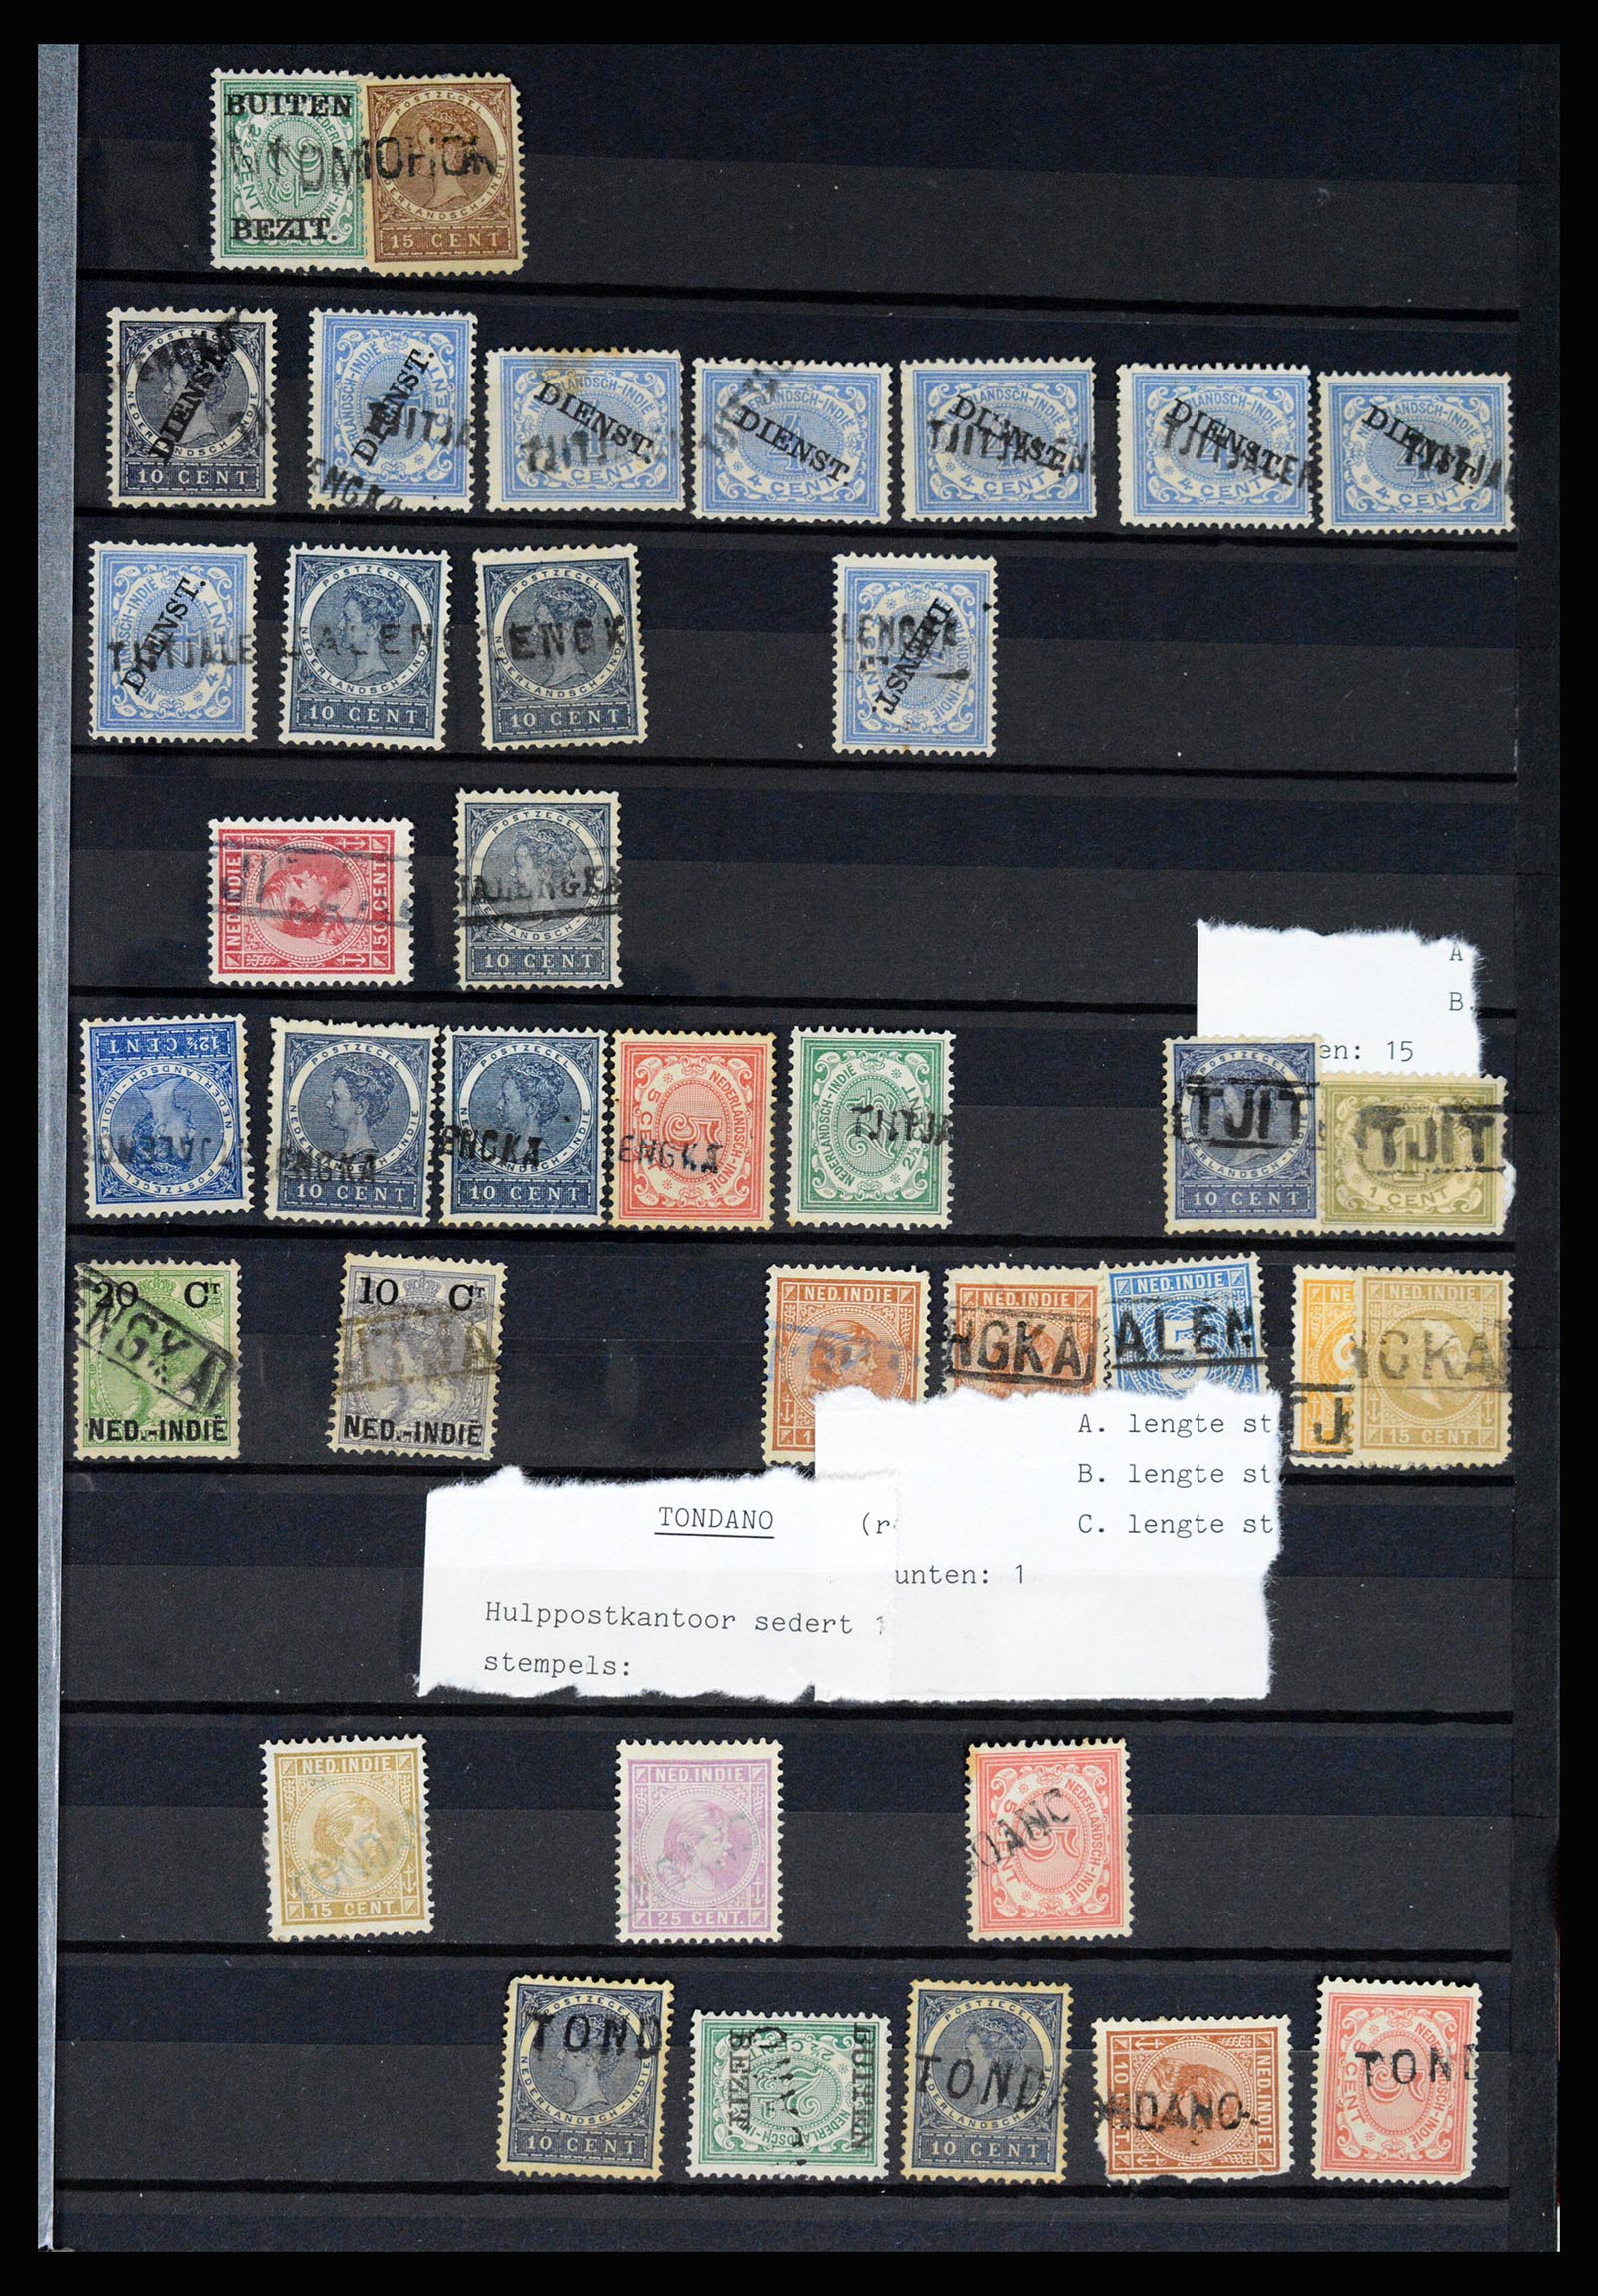 36512 075 - Stamp collection 36512 Nederlands Indië stempels 1872-1930.